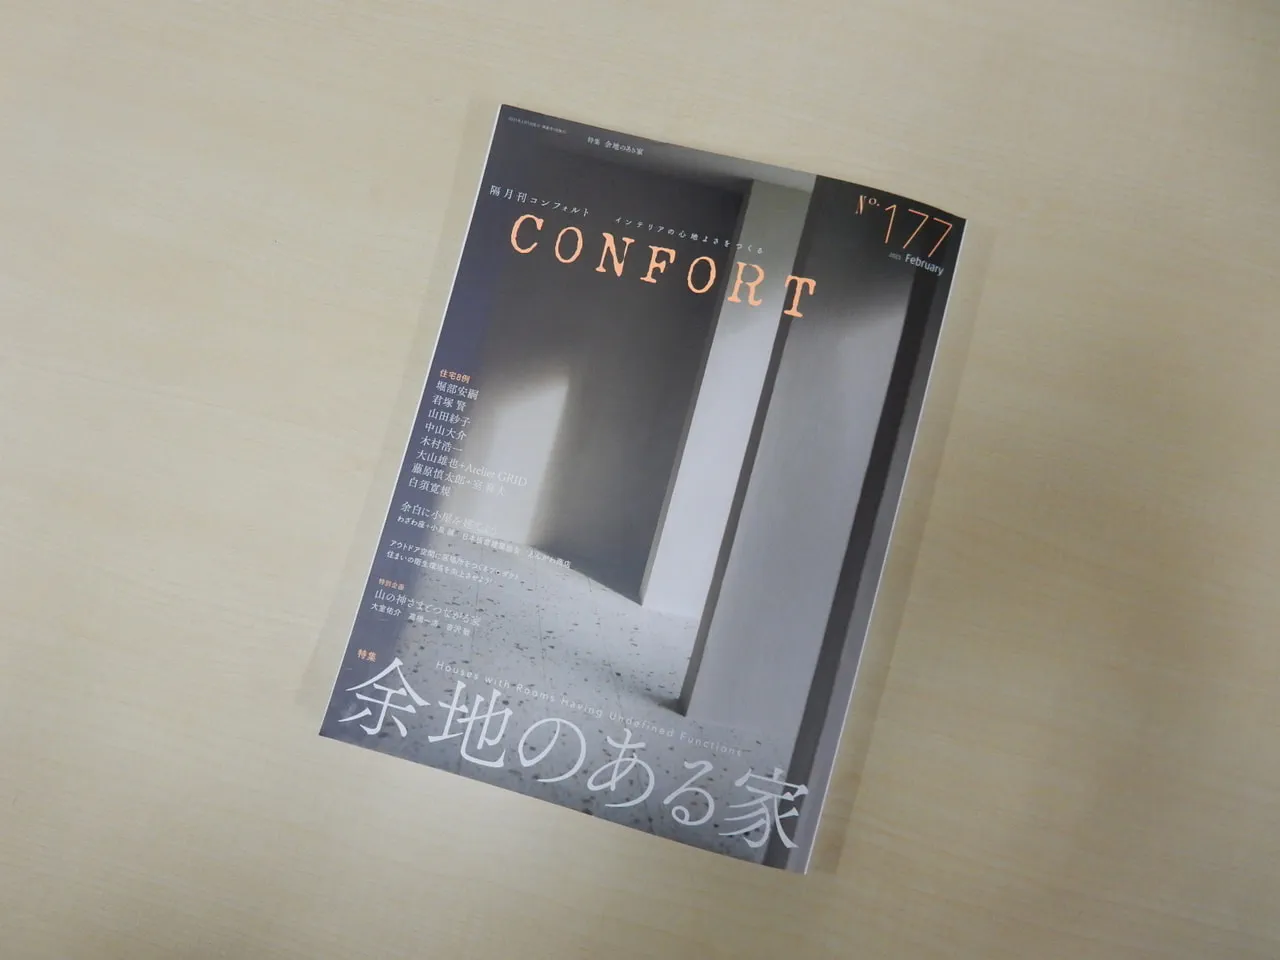 『CONFORT』に白須先生が設計された「並びの住宅」が掲載されました